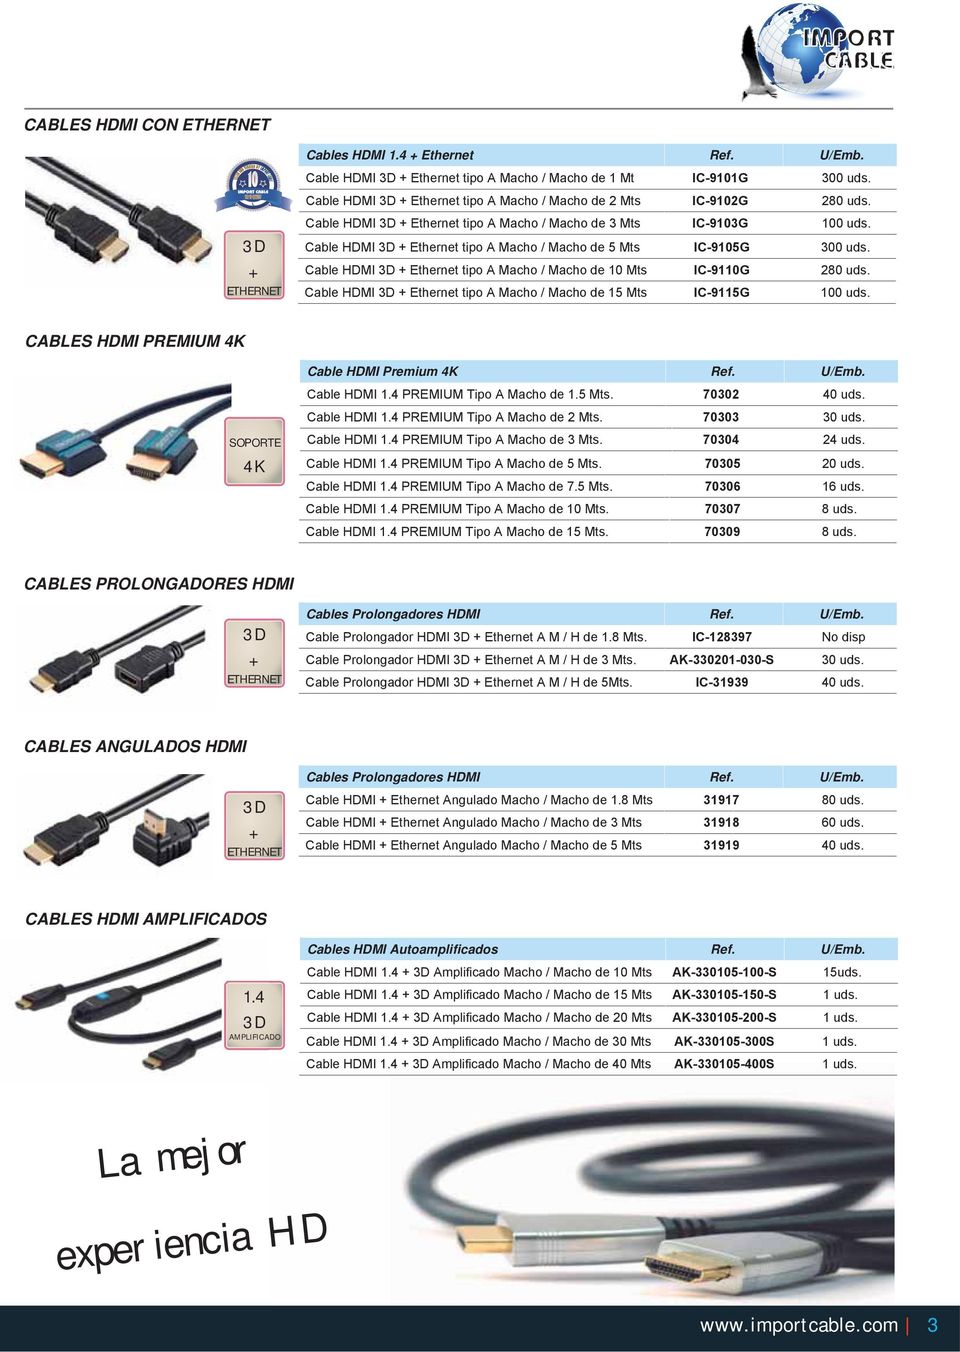 Cable HDMI 3D + Ethernet tipo A Macho / Macho de 5 Mts IC-9105G 300 uds. Cable HDMI 3D + Ethernet tipo A Macho / Macho de 10 Mts IC-9110G 280 uds.